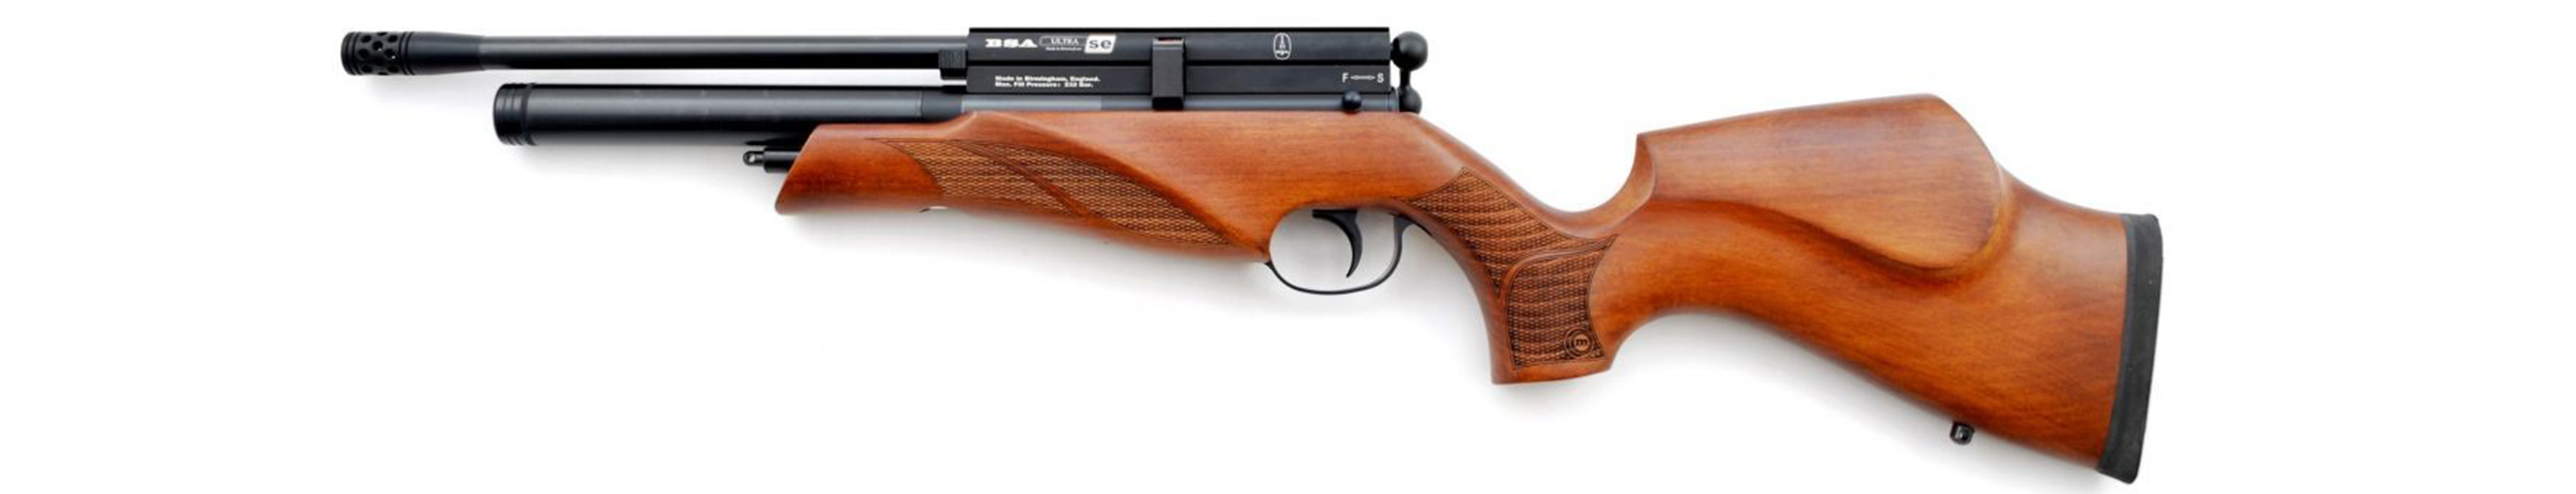 Пневматическая винтовка BSA Ultra Multishot Beech-F 7,5J 4.5 PCP купить по оптимальной цене,  доставка по России, гарантия качества